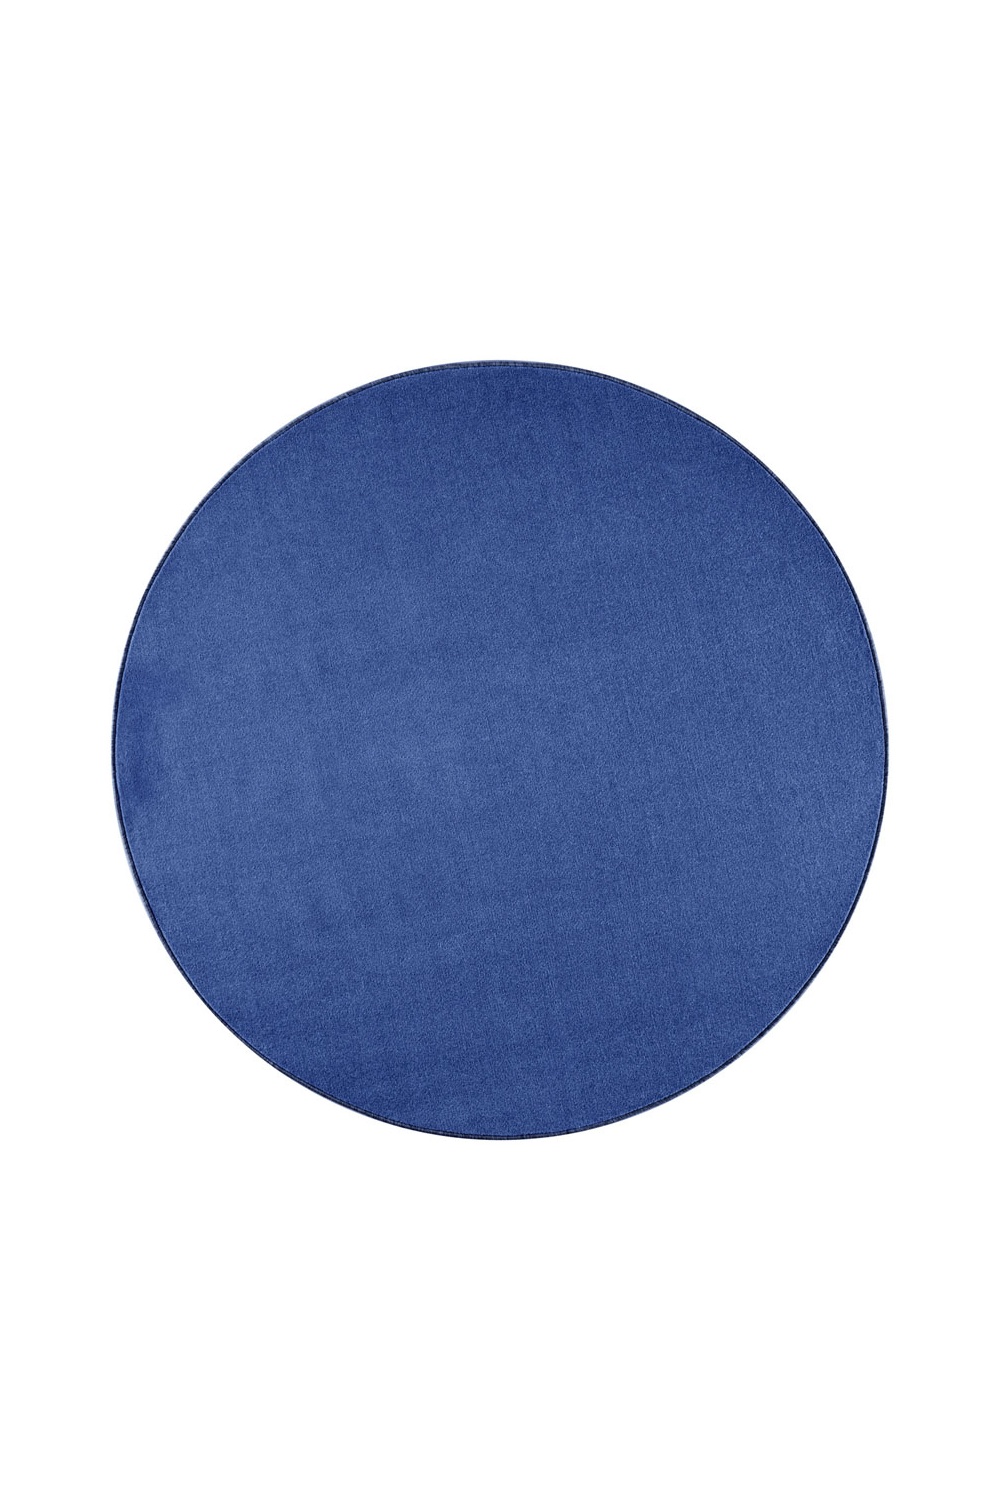 Dywan Niebieski Jednokolorowy Nasty Okrągły 101153 Blue